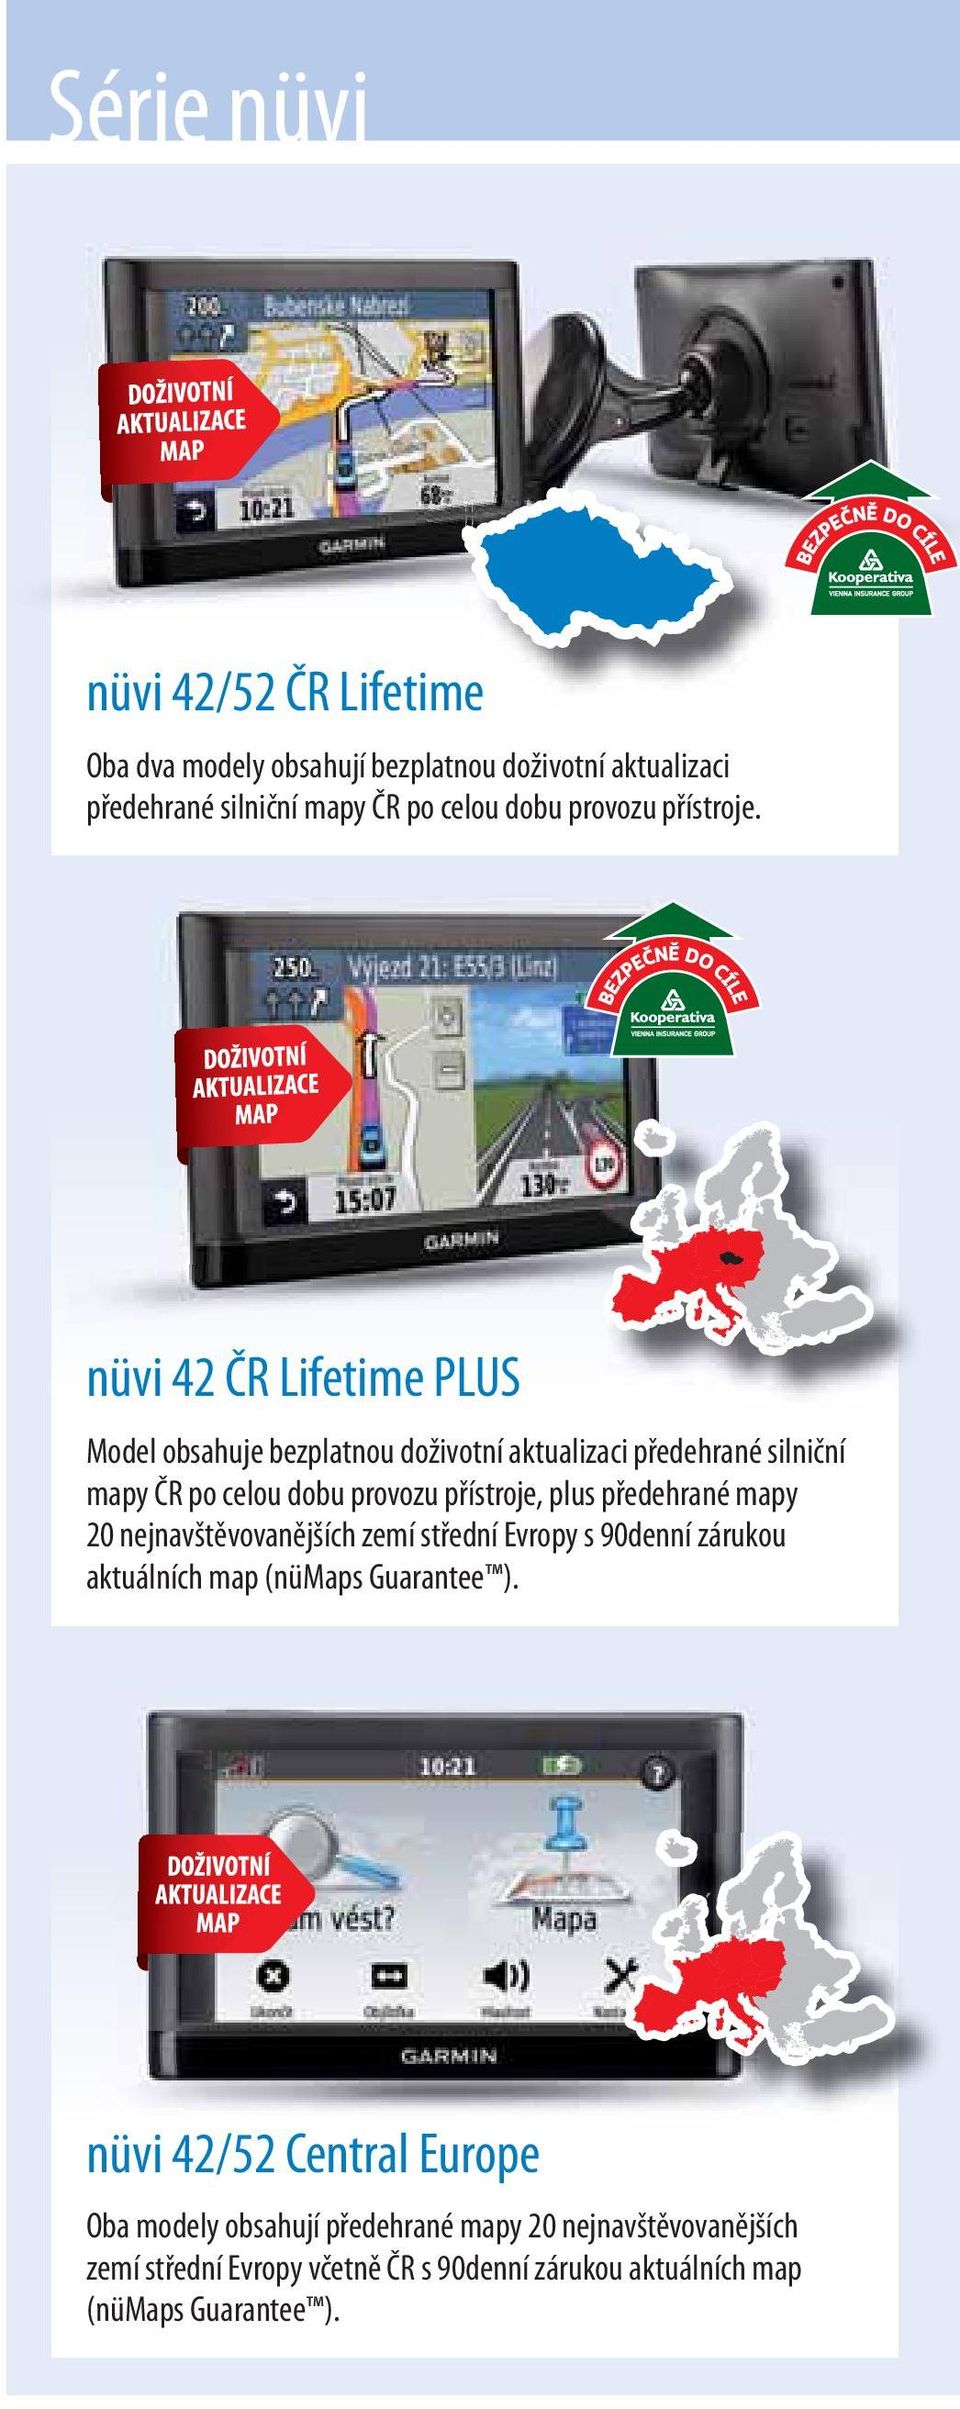 nüvi 42 ČR Lifetime PLUS Model obsahuje bezplatnou doživotní aktualizaci předehrané silniční mapy ČR po celou dobu provozu přístroje, plus